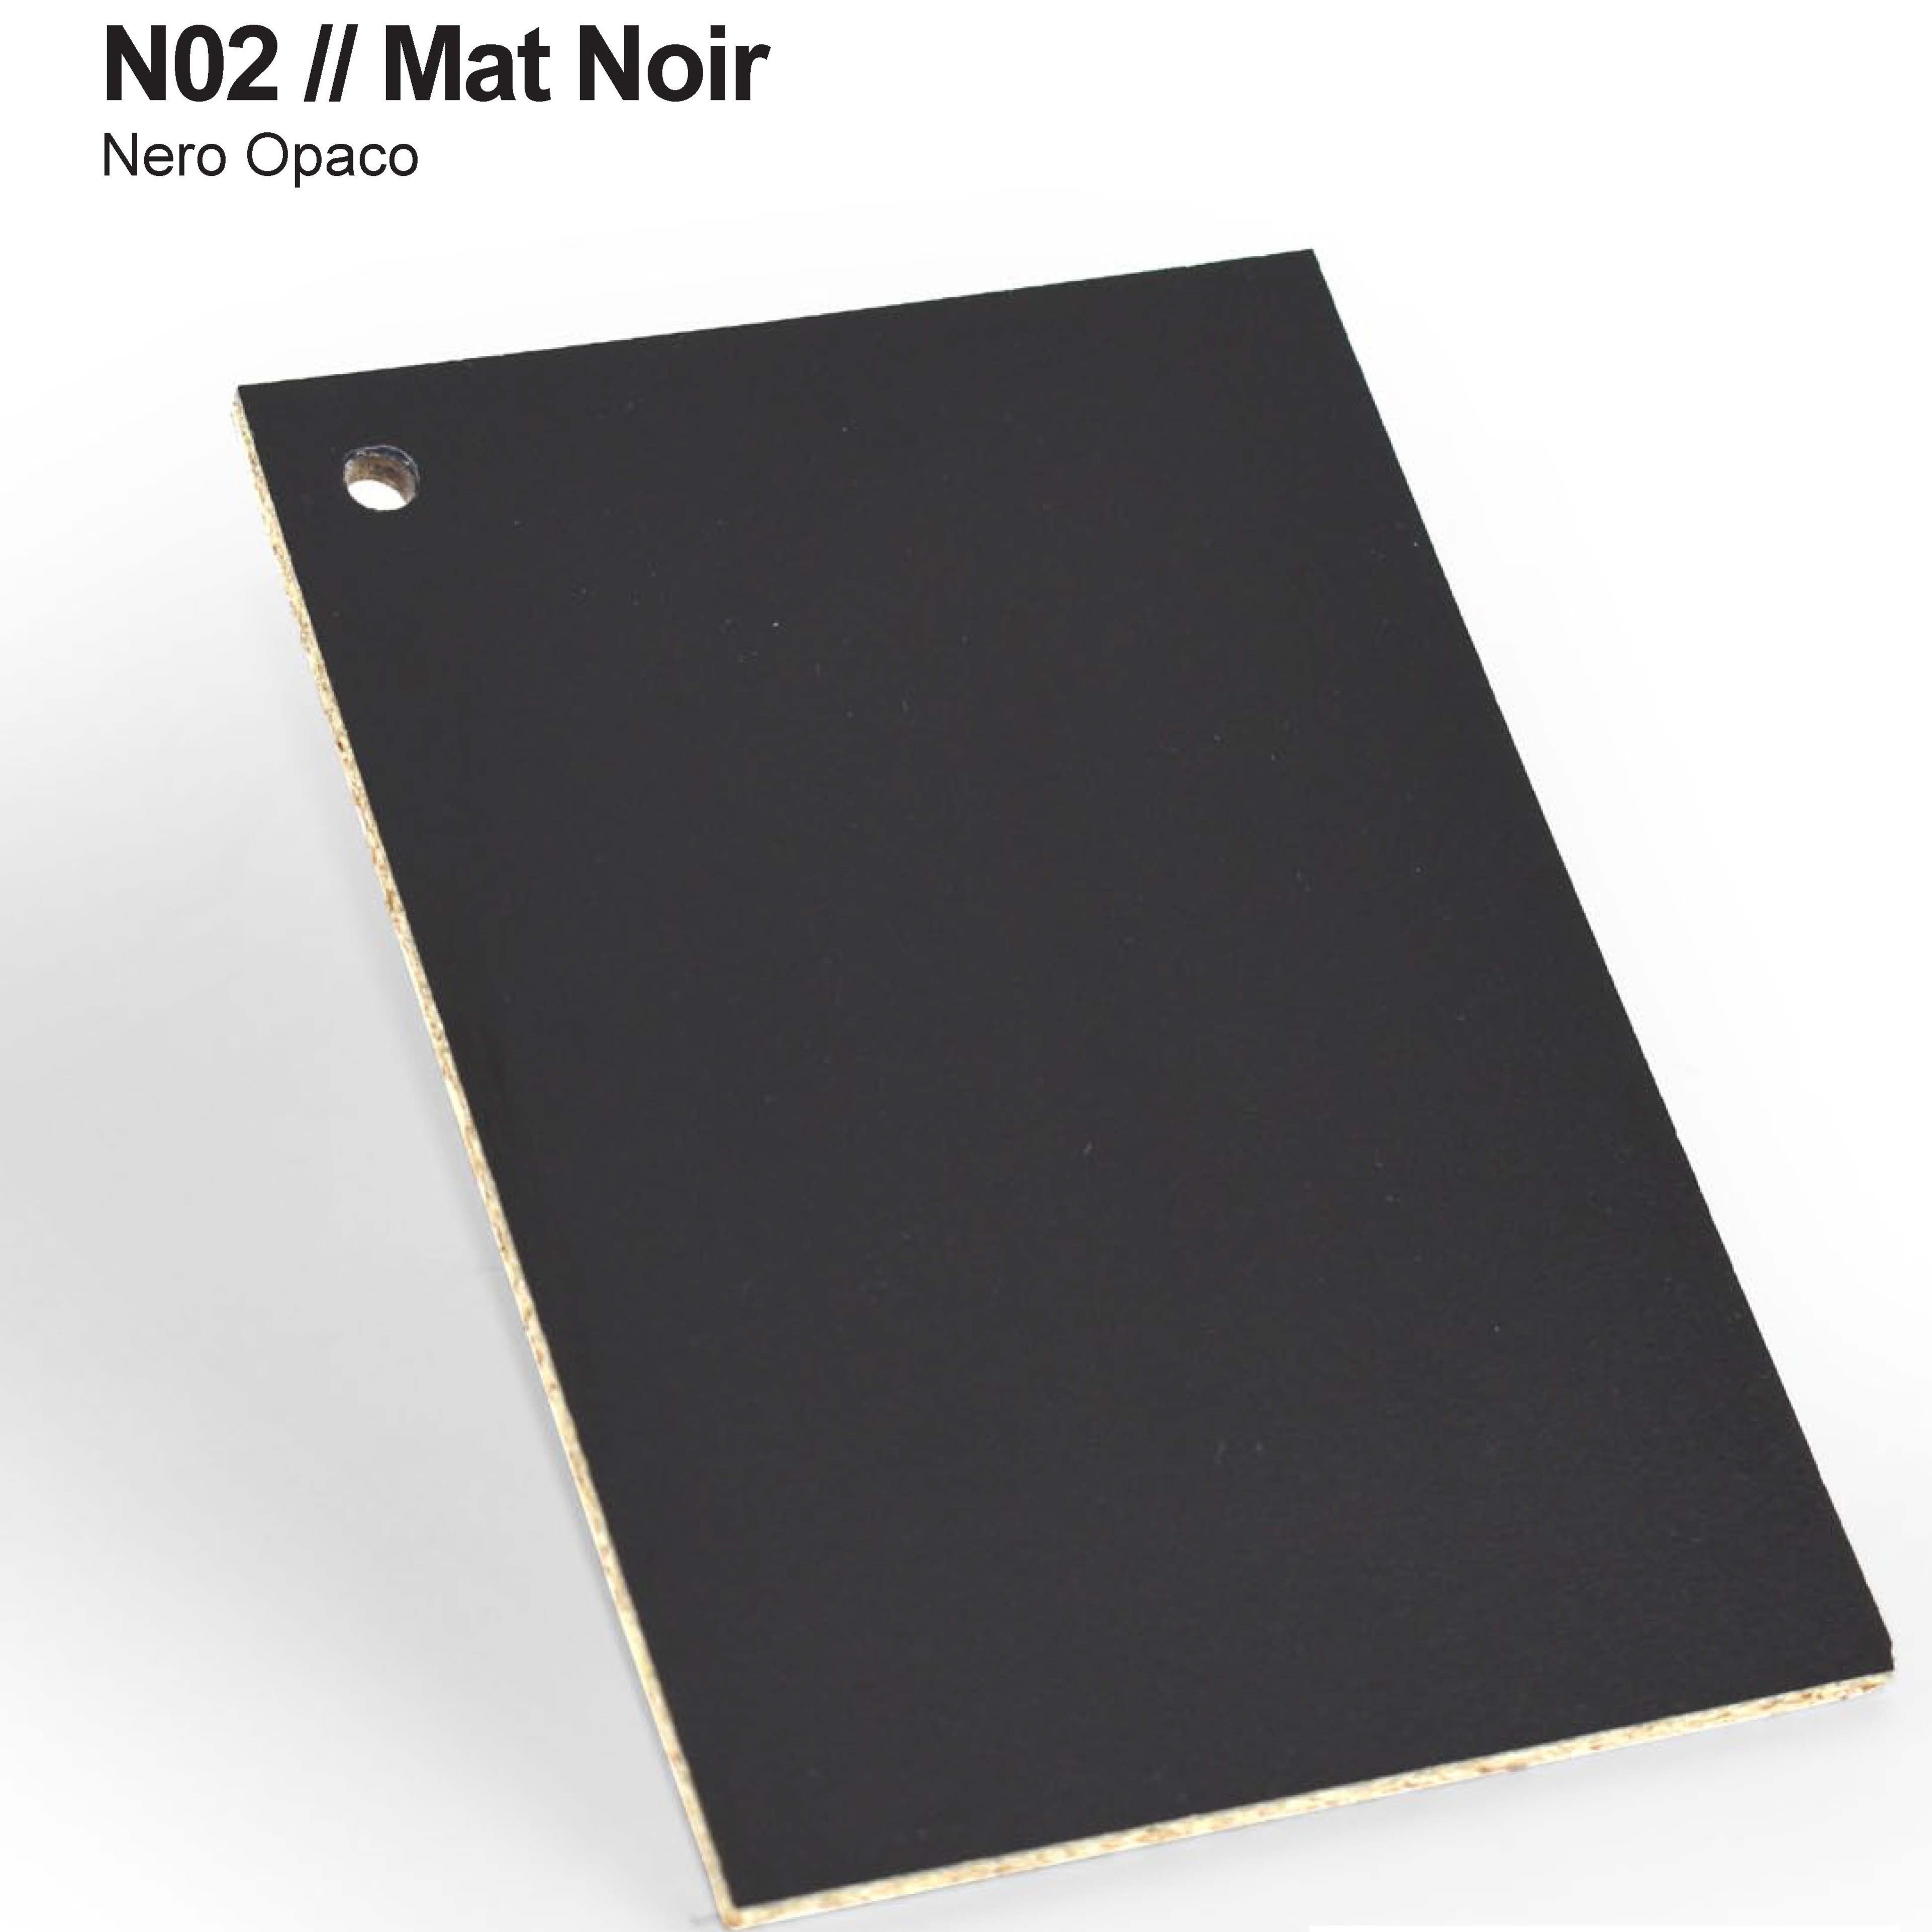 NOIR MAT (N02)